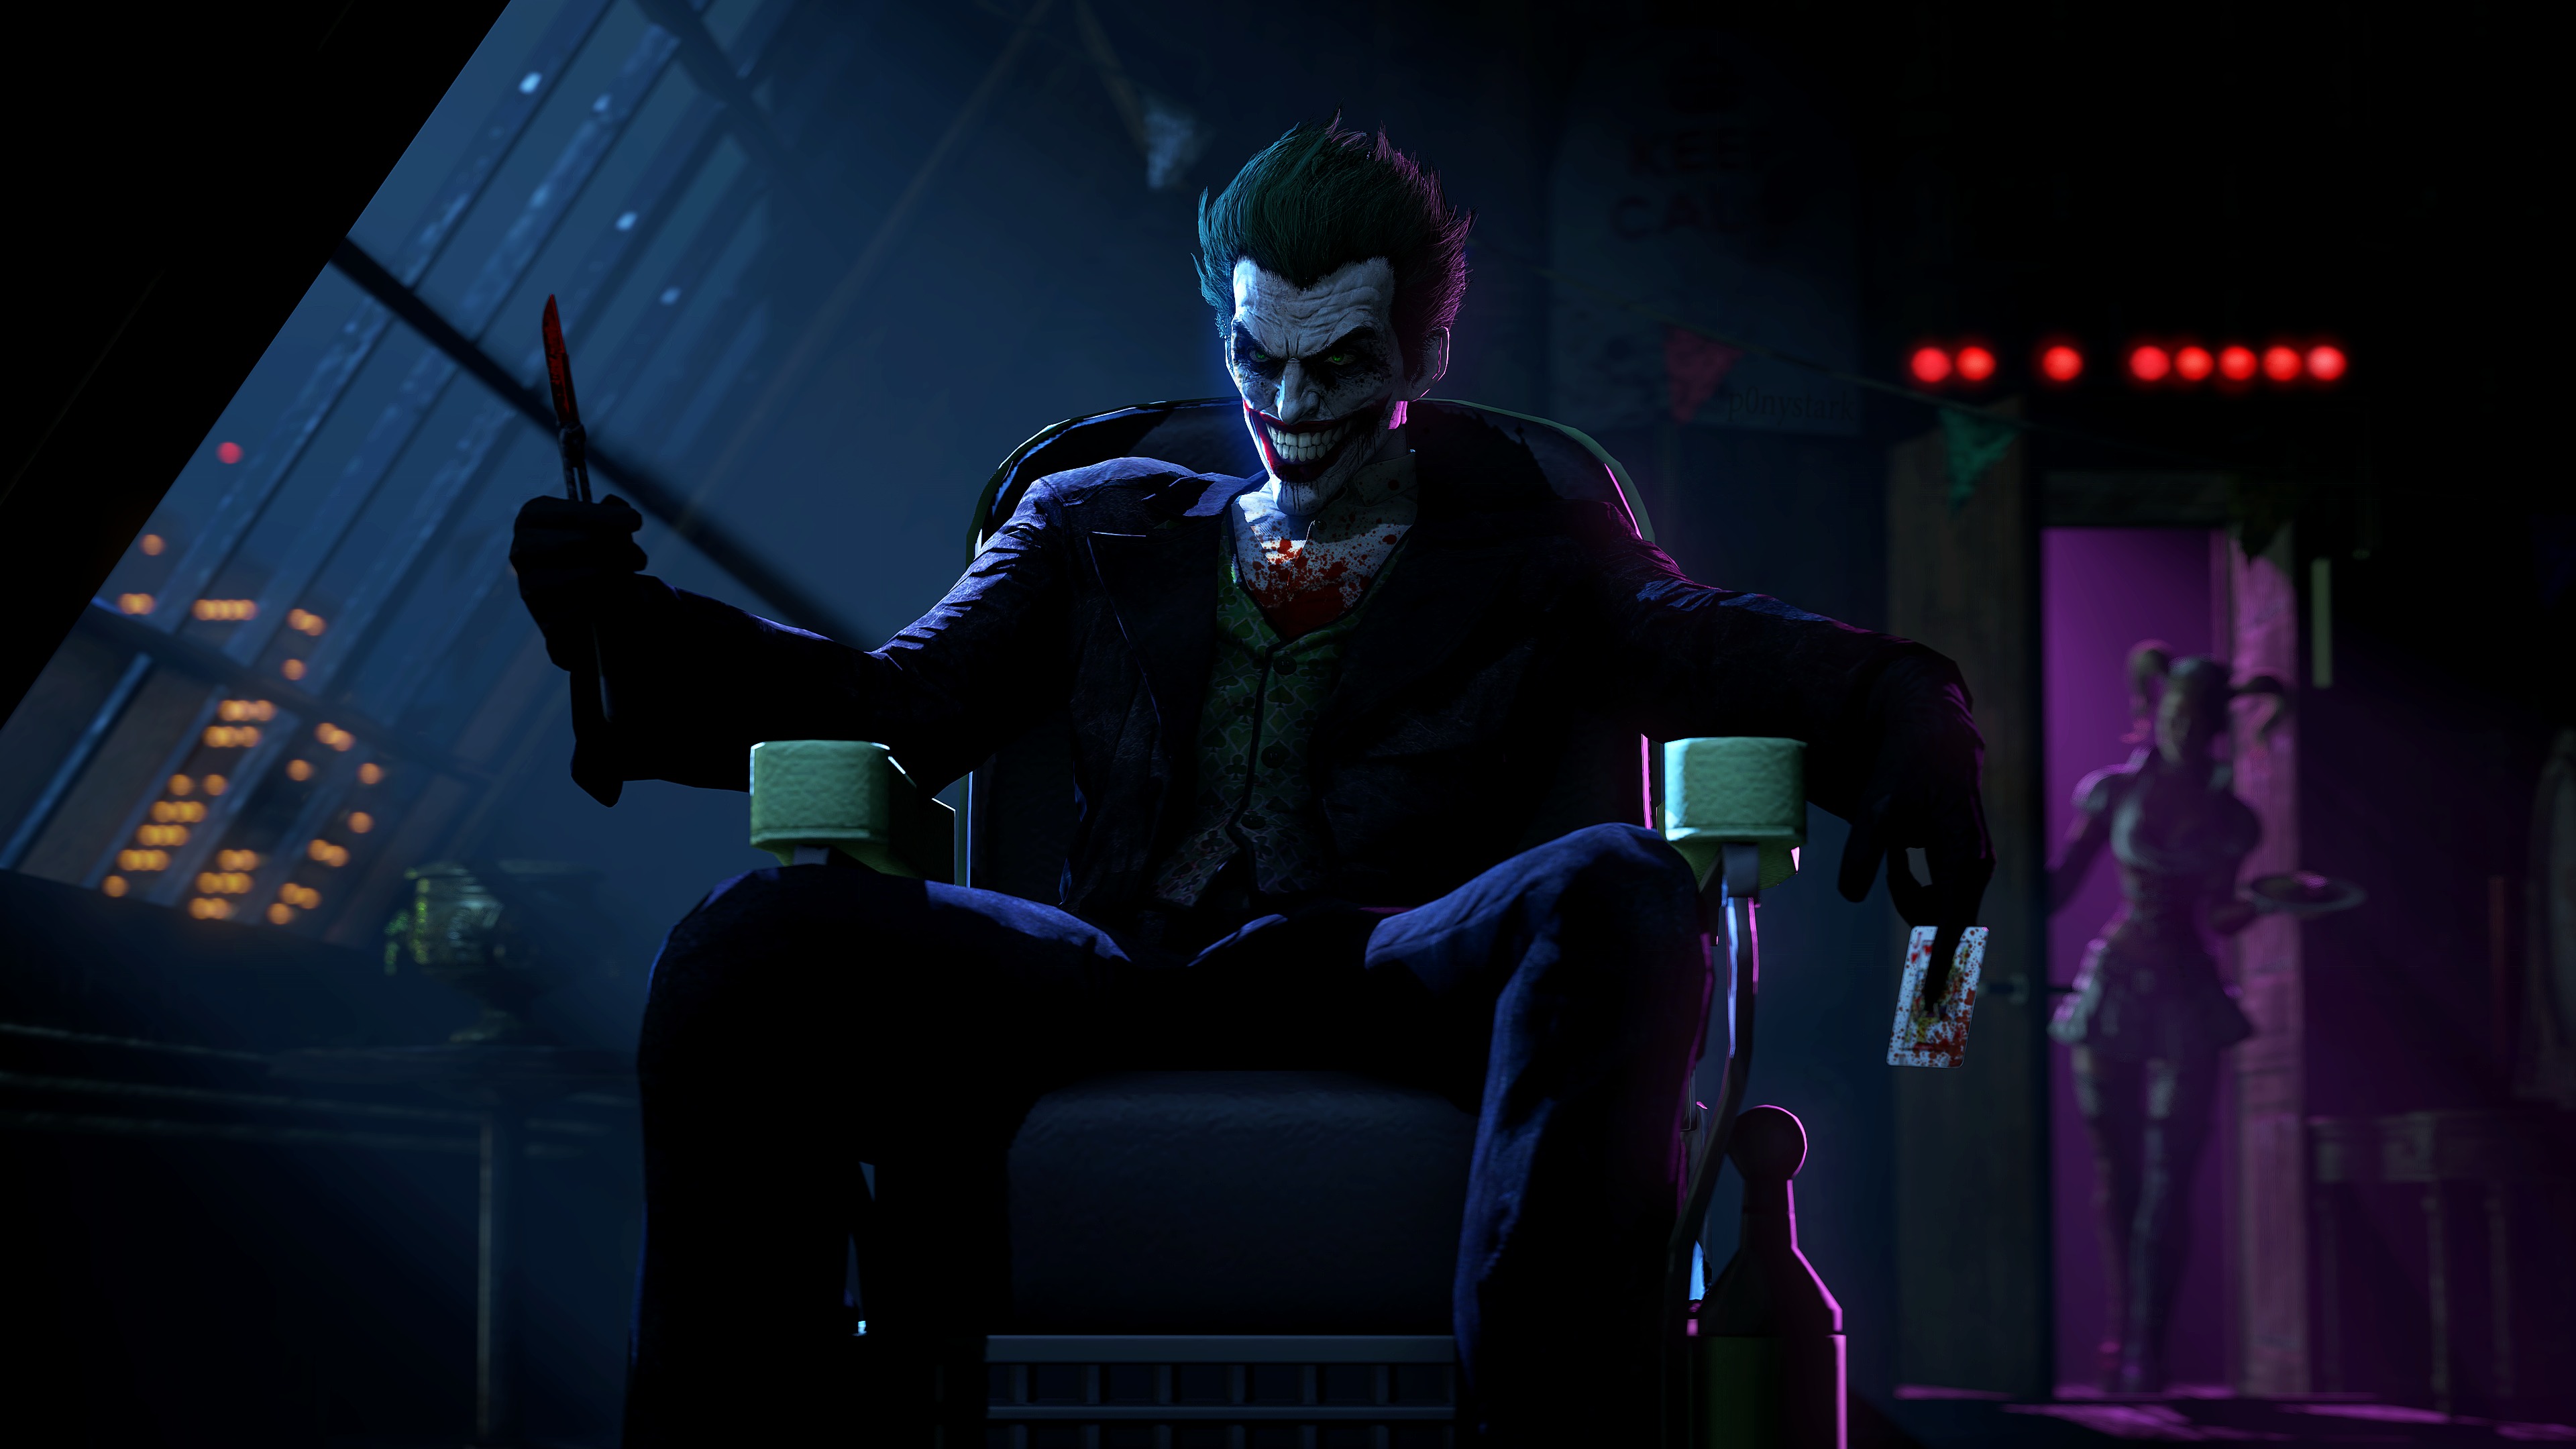 batman: arkham origins, video game, joker, batman cell phone wallpapers